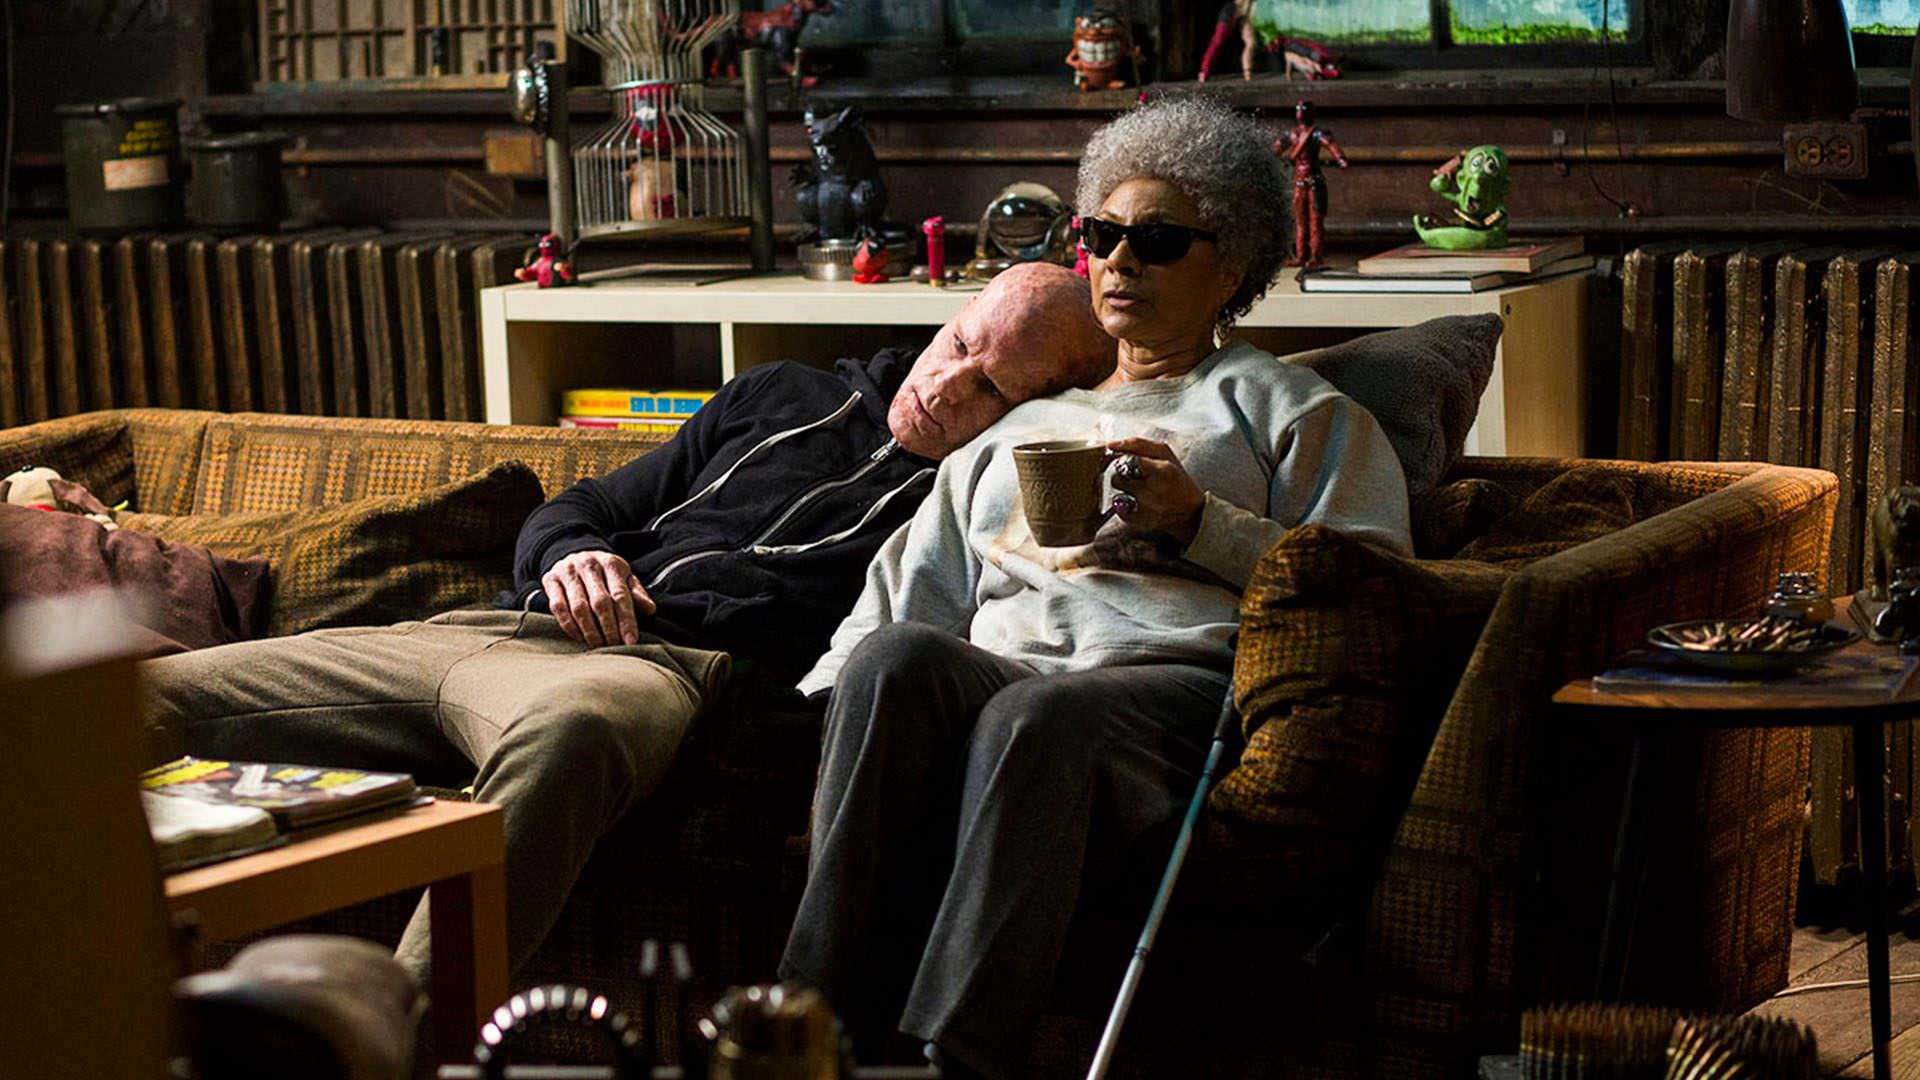 لزلی اوگامس در نقش Blind Al درکنار رایان رینولدز در نقش ددپول در فیلم Deadpool